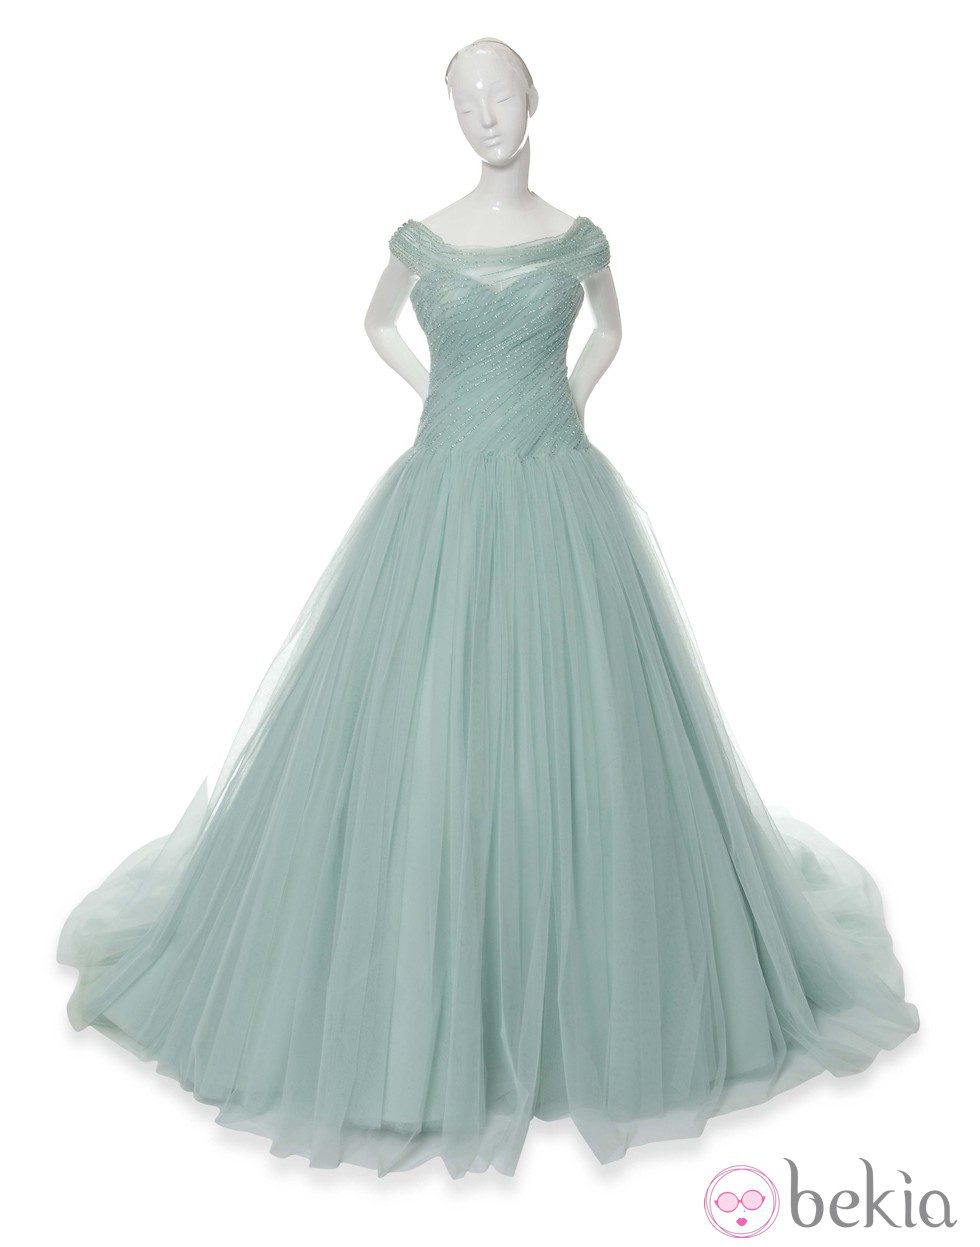 Colección de vestidos de Alta Costura inspirados en las Princesas Disney -  Galería en Bekia Moda